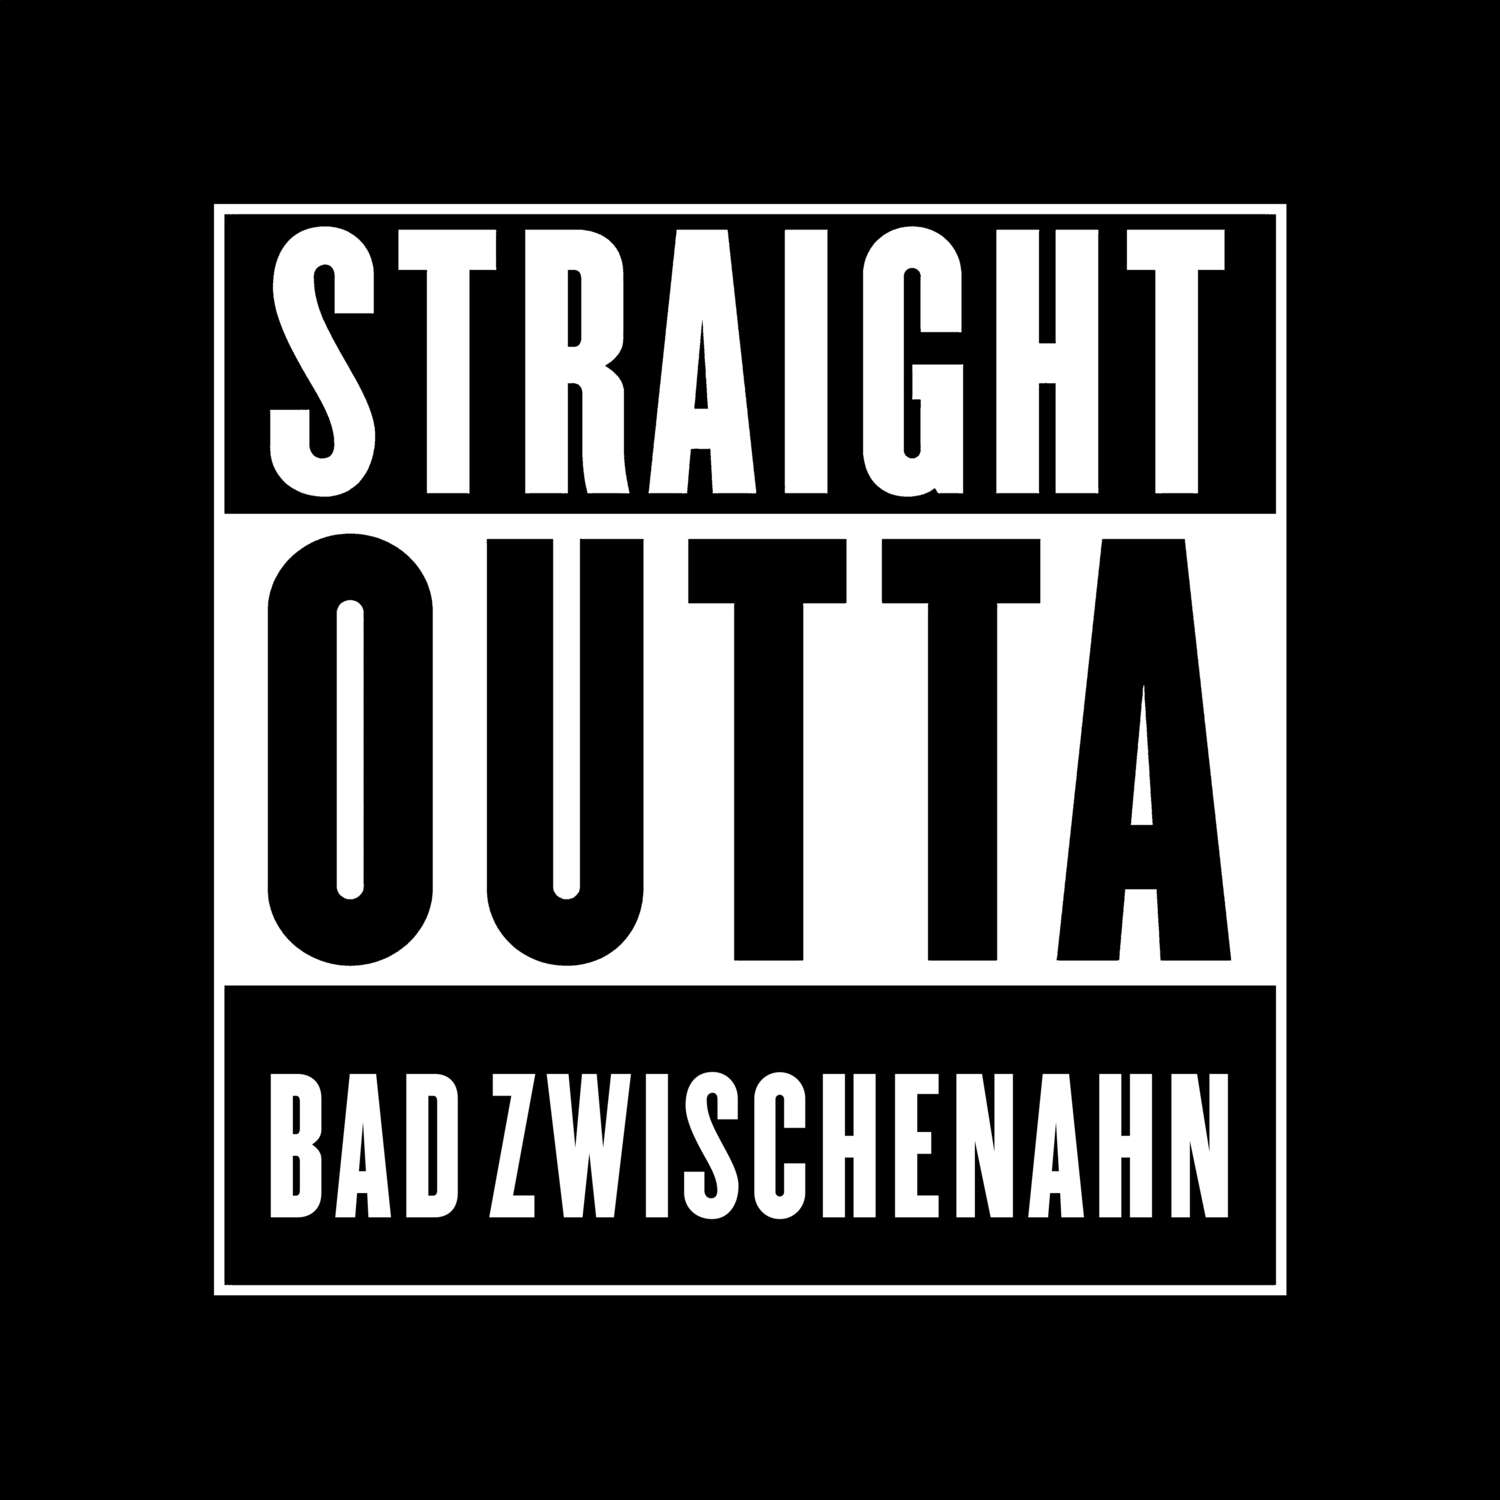 Bad Zwischenahn T-Shirt »Straight Outta«